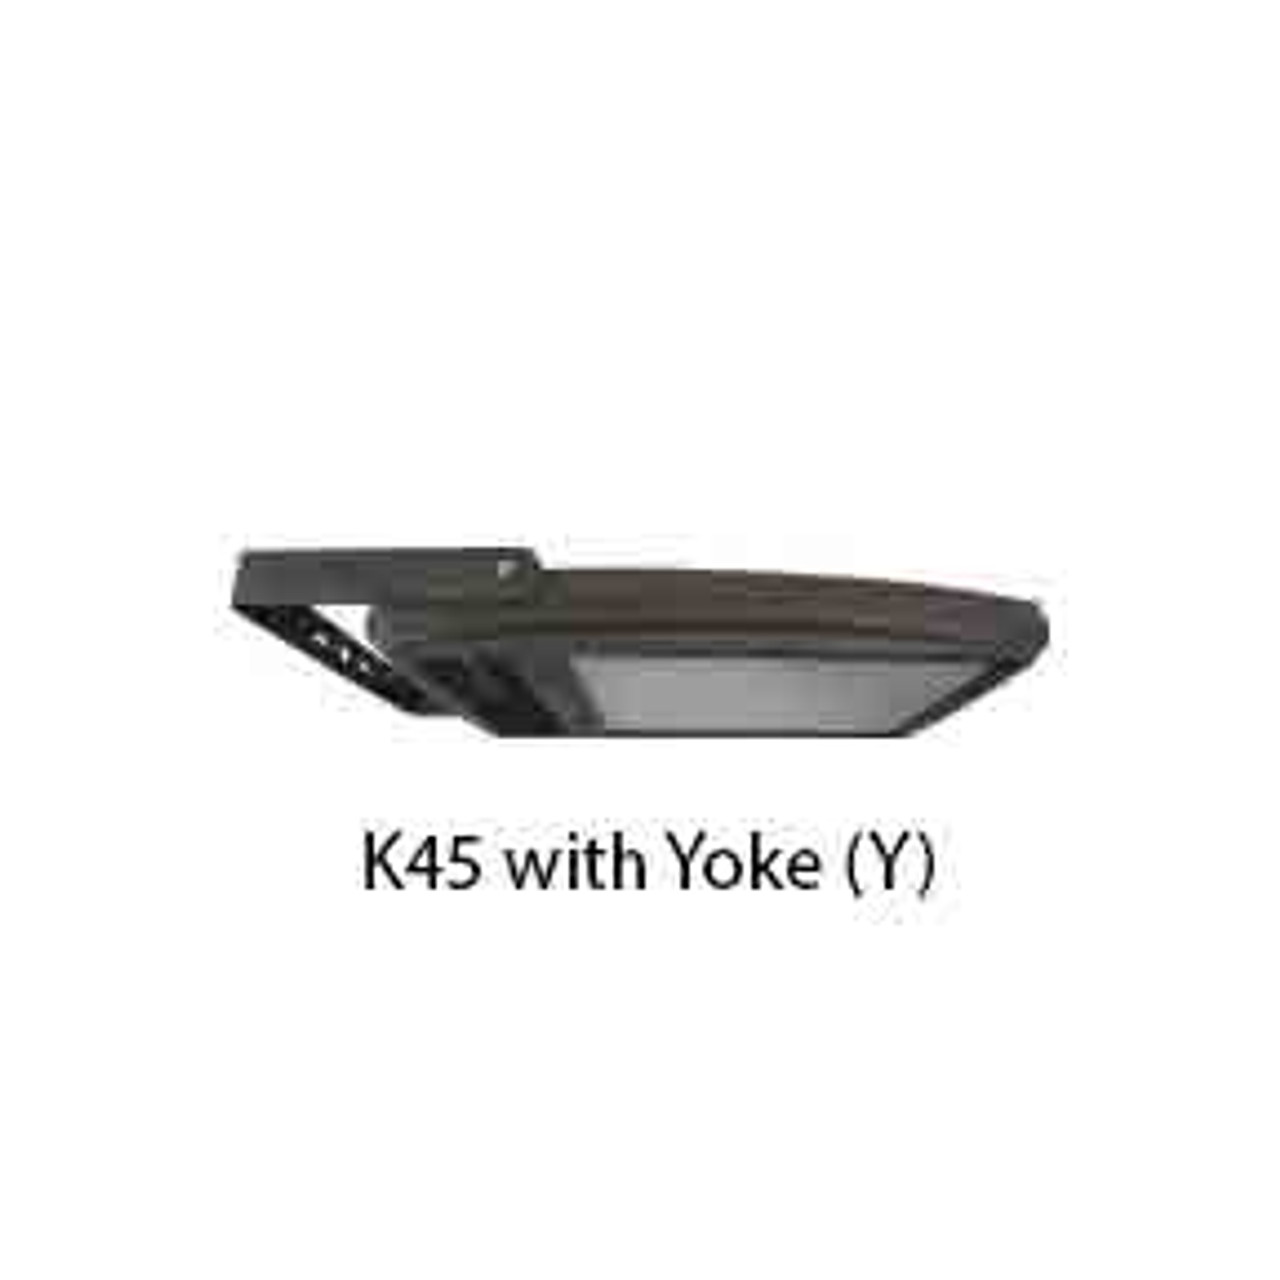 K45 with Yoke (Y)